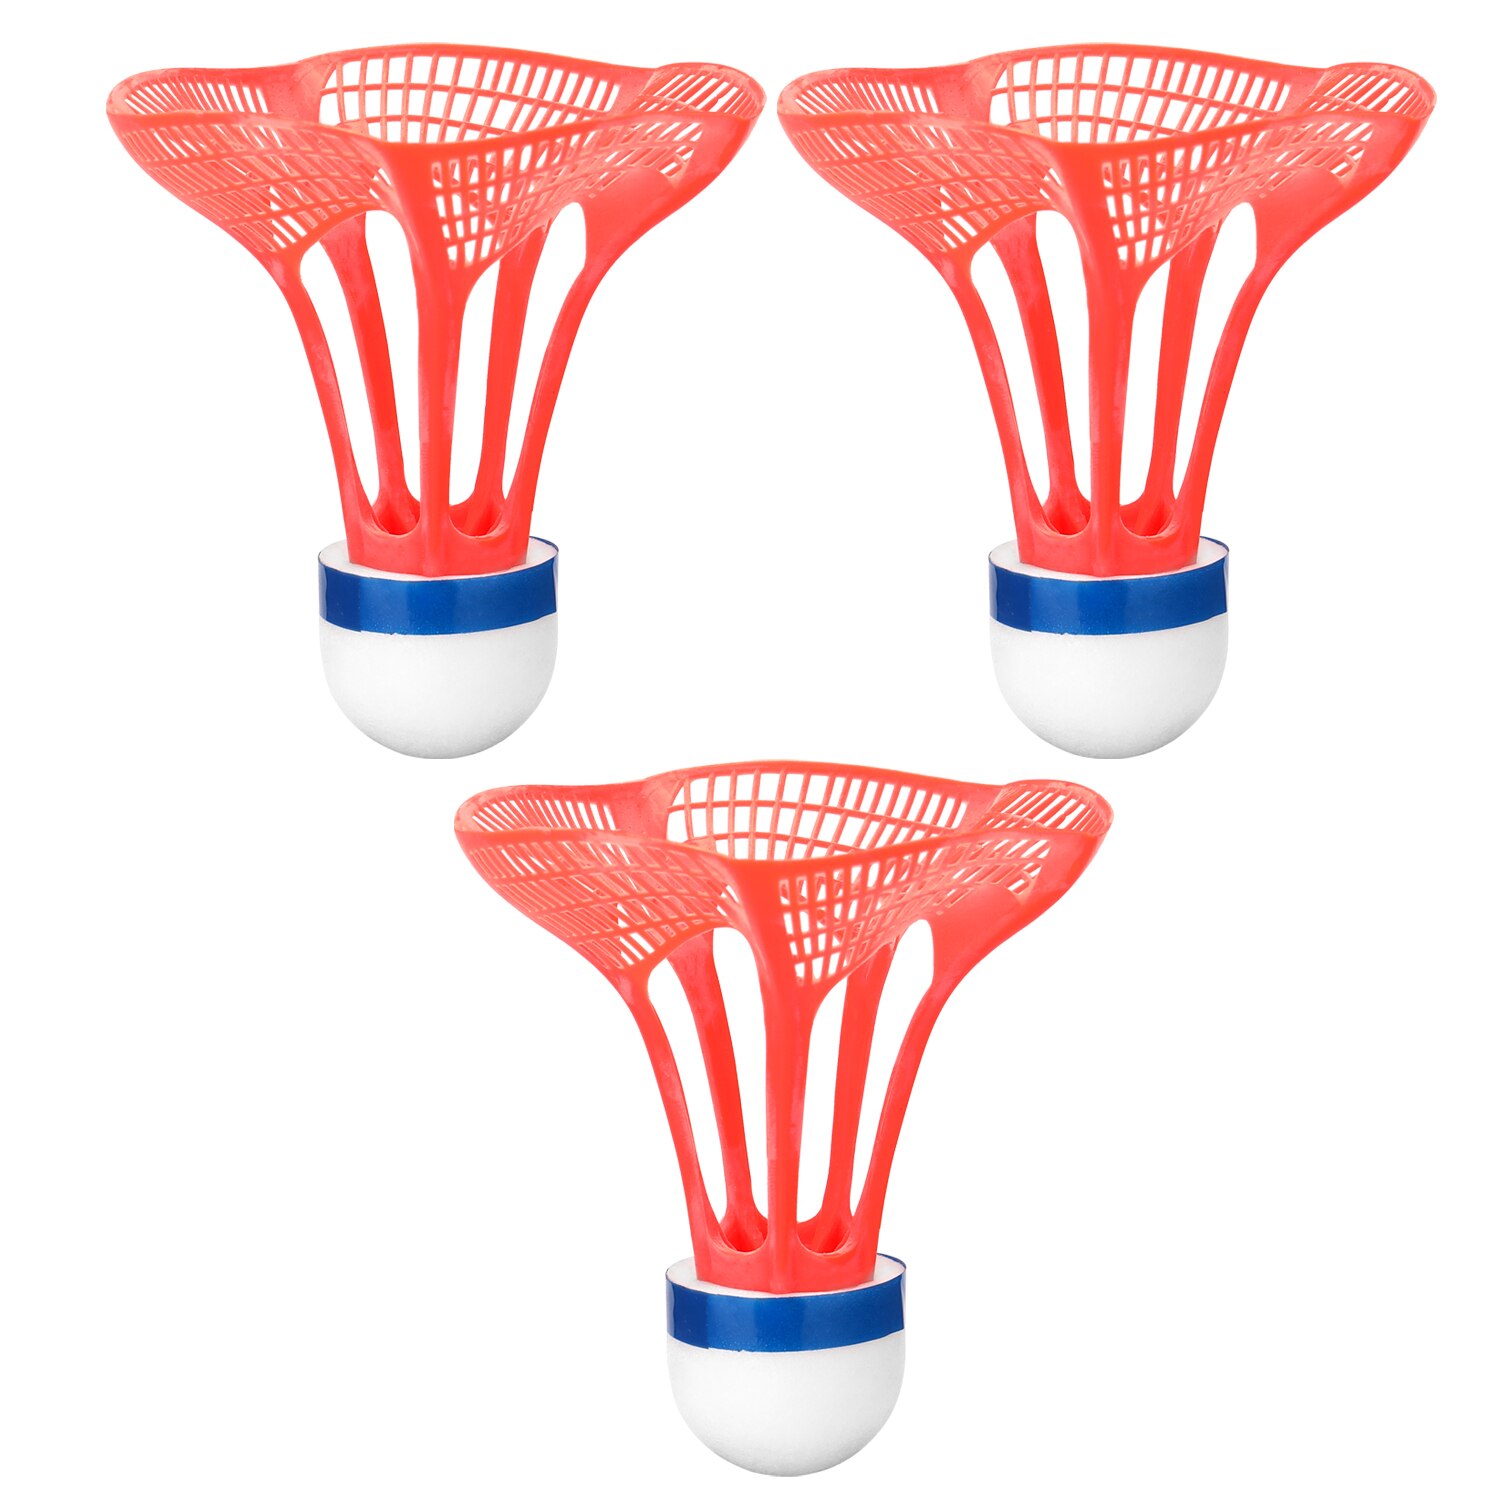 3 stk / pakke udendørs badmintonbold plastbold sport træning træningsbolte farve badmintonbold: Rød